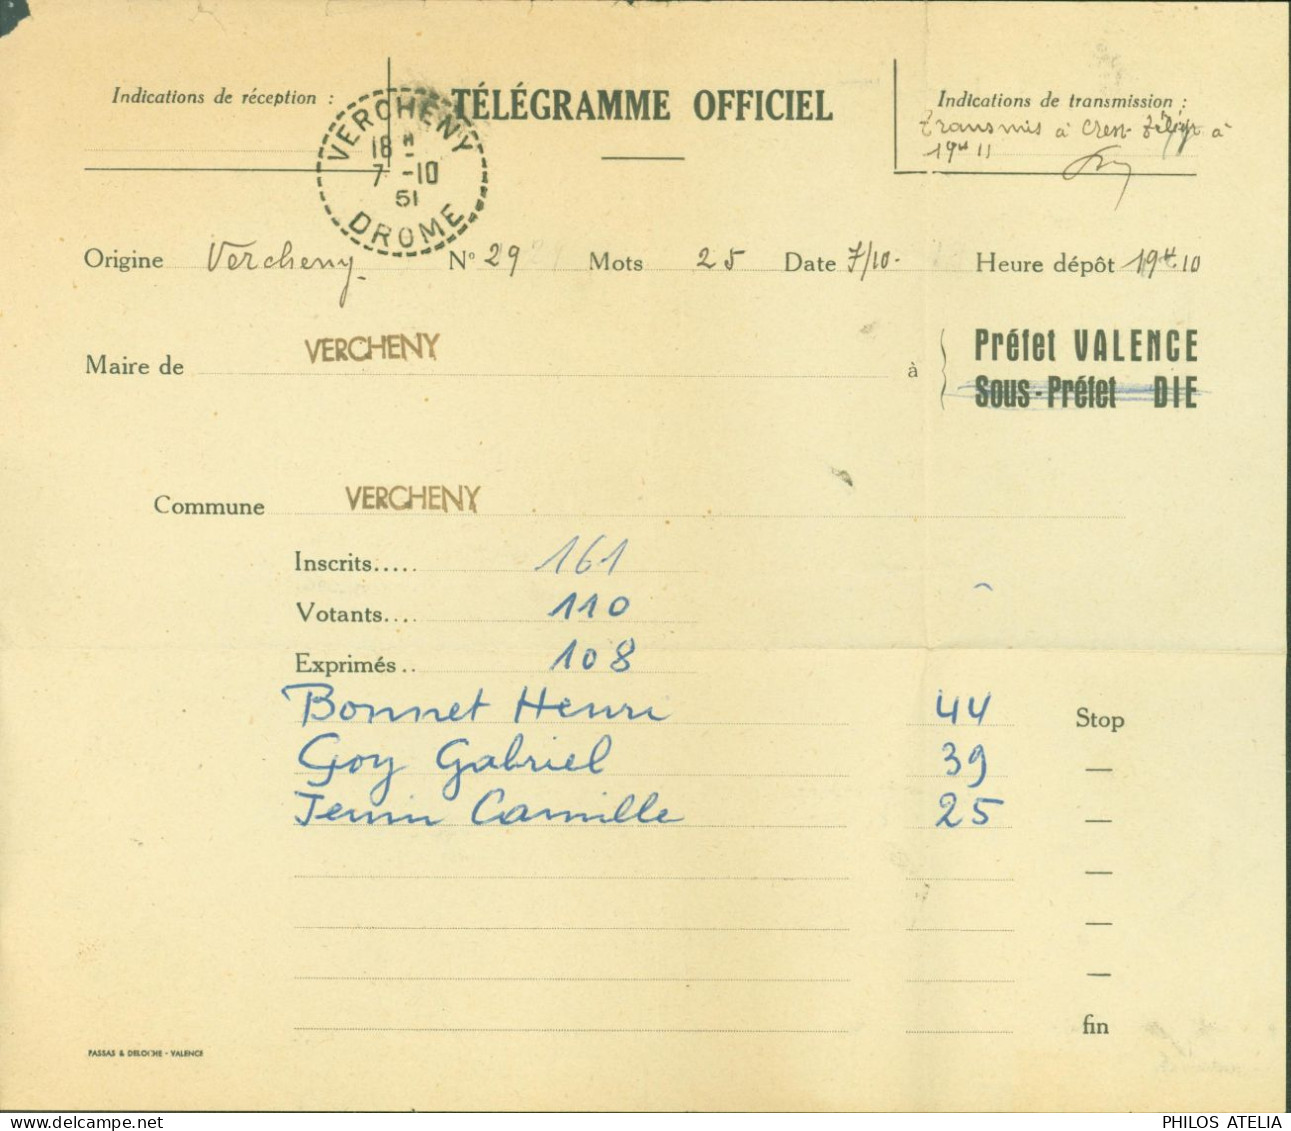 Télégramme Officiel Drôme CAD Perlé Vercheny Drôme 7 10 1951 Résultat élections - Telegraph And Telephone